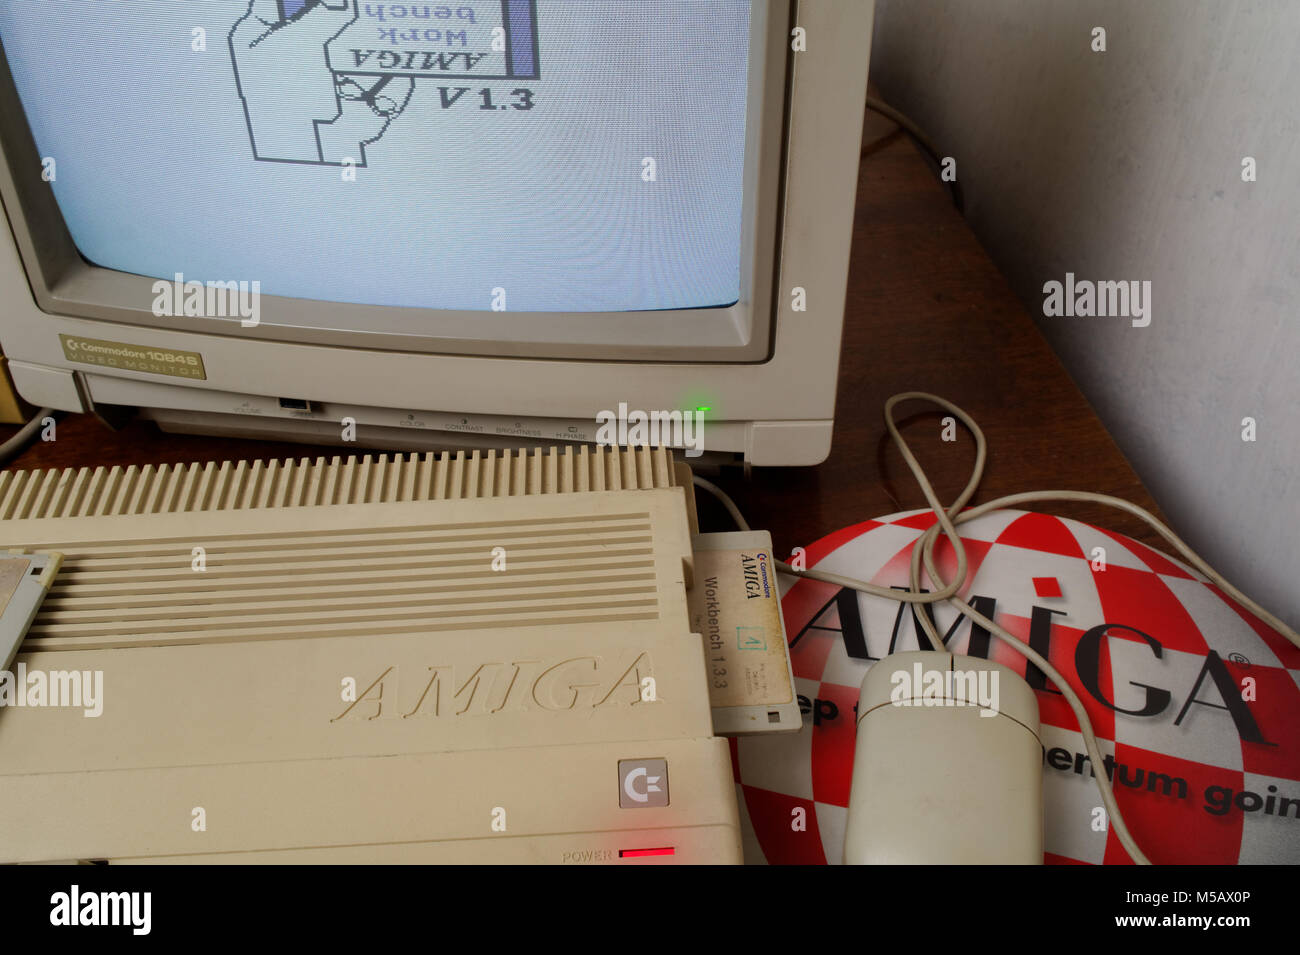 Amiga 500, souris, tapis de souris et moniteur Commodore 1084S Banque D'Images